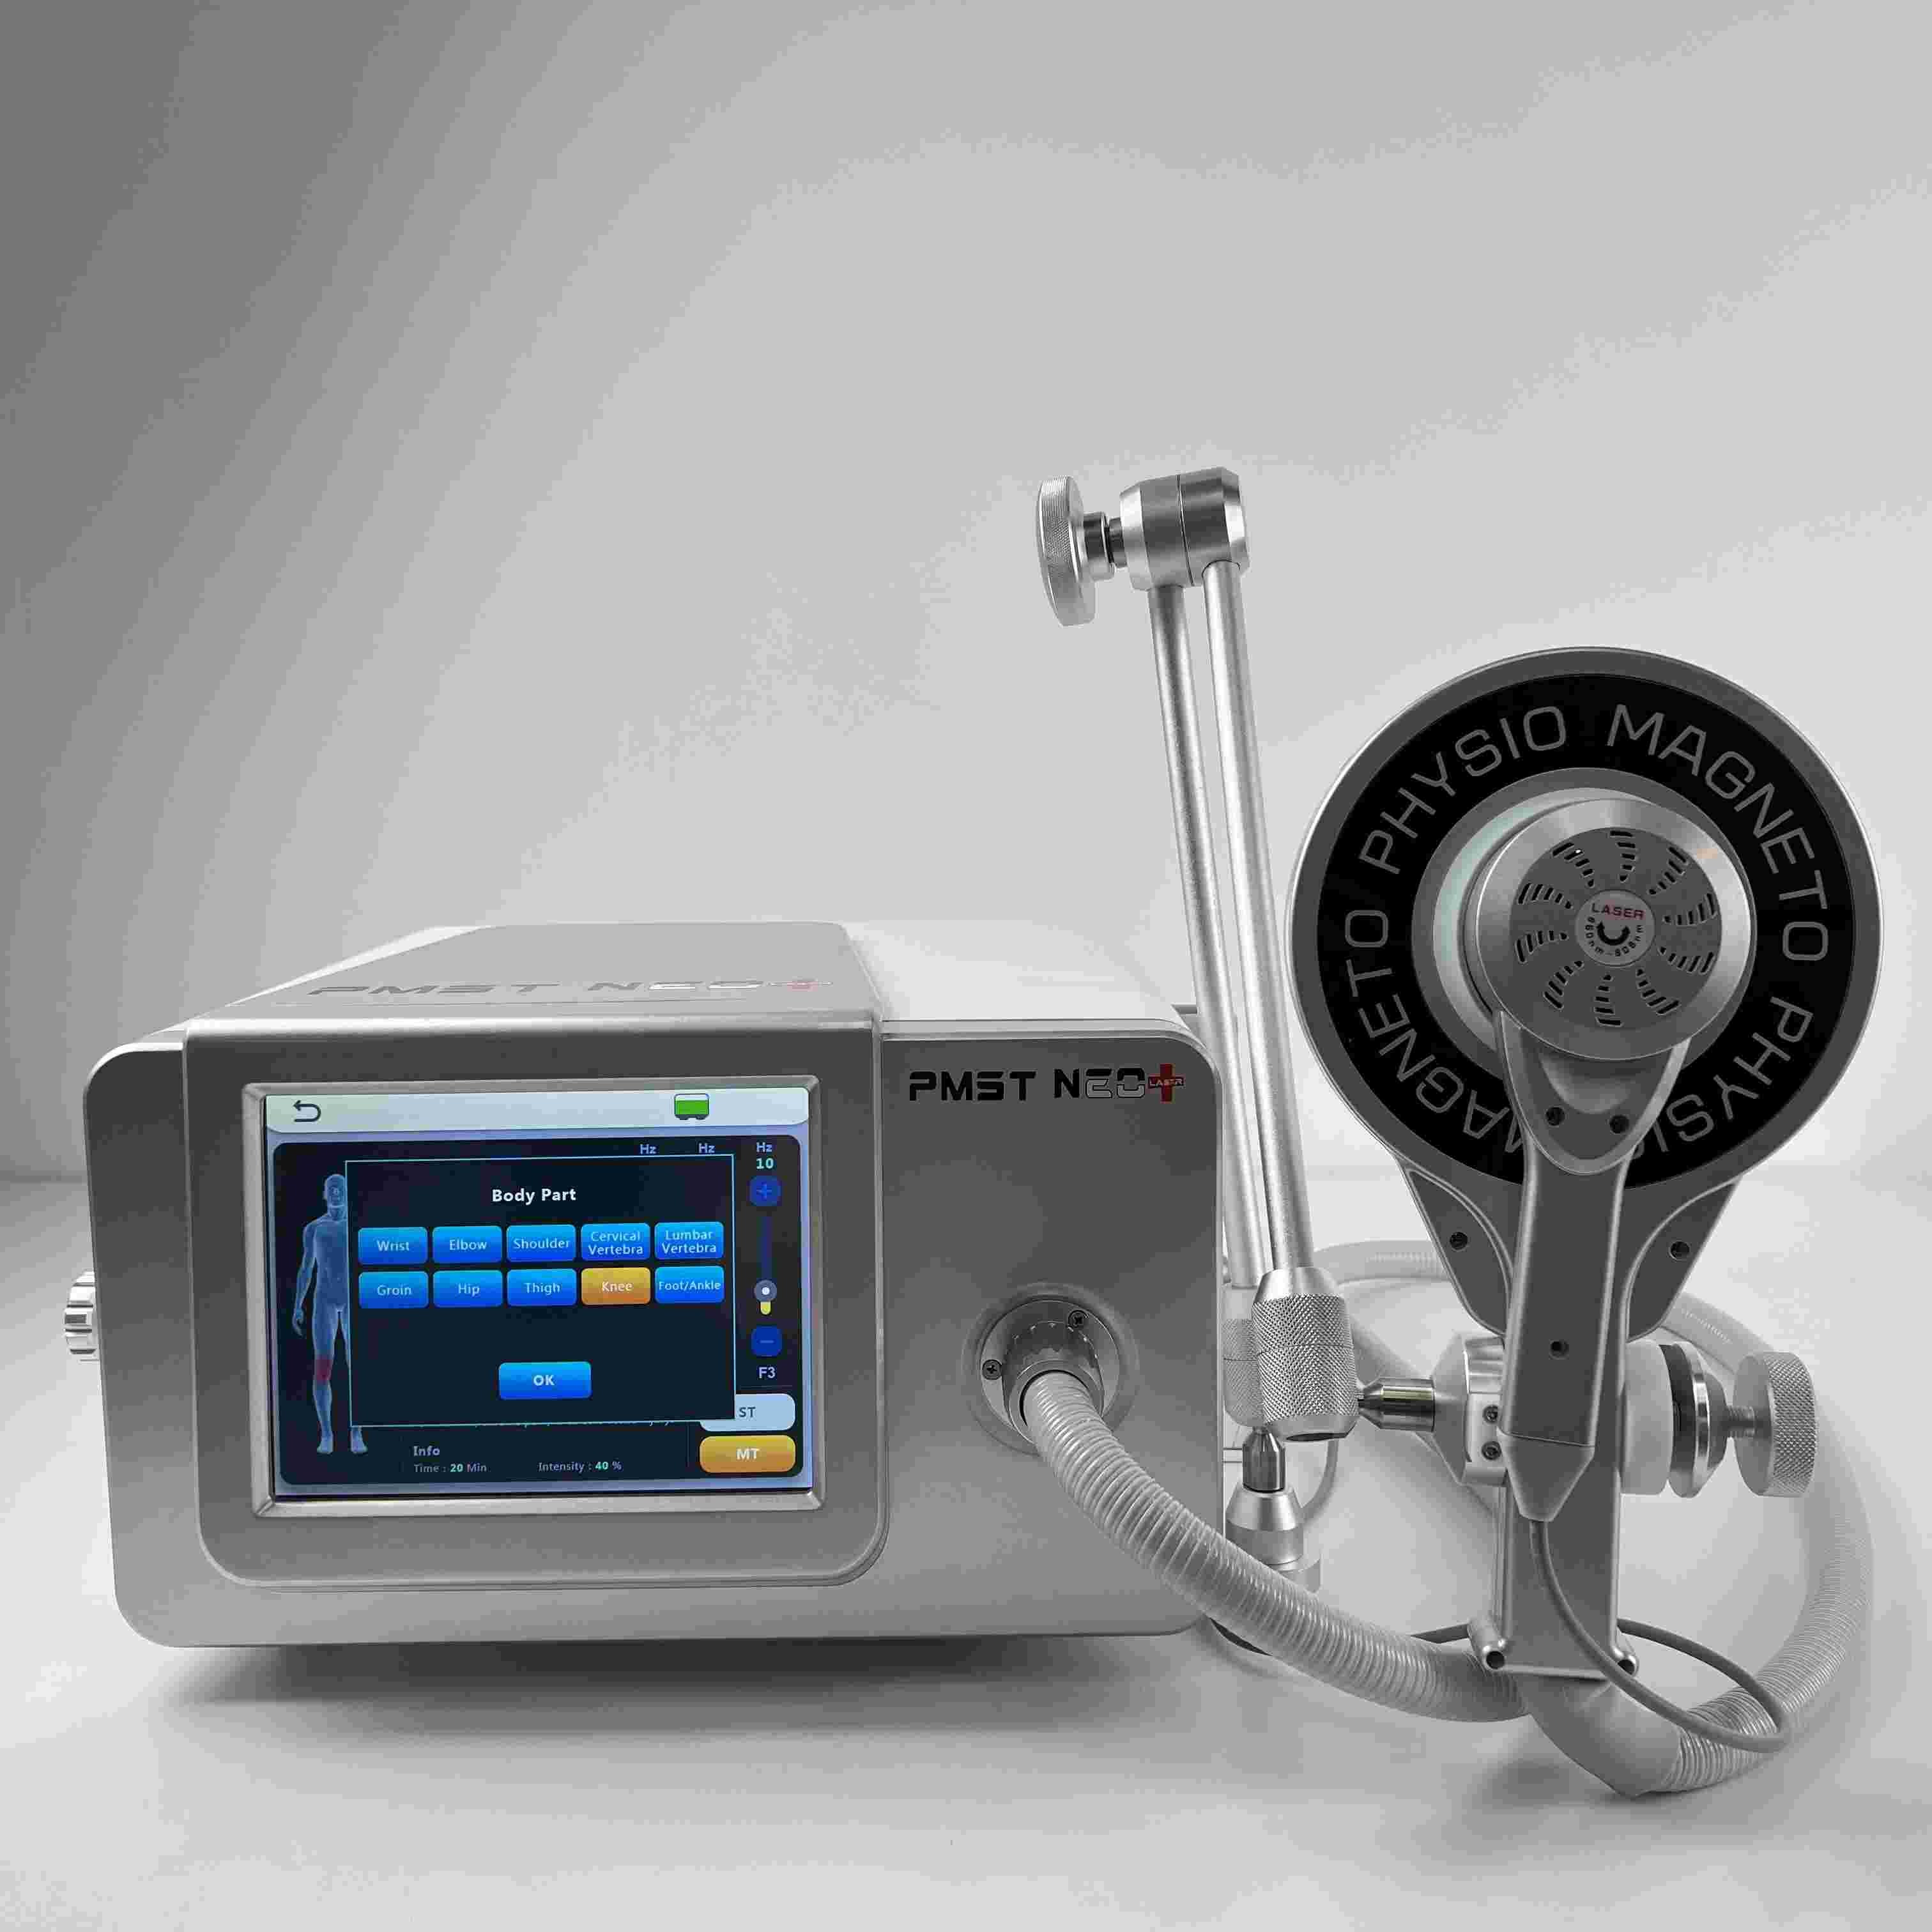 808NM Magneto Fisioterapia Máquina 2 em 1 Dispositivo de Massagem de Laser Baixo